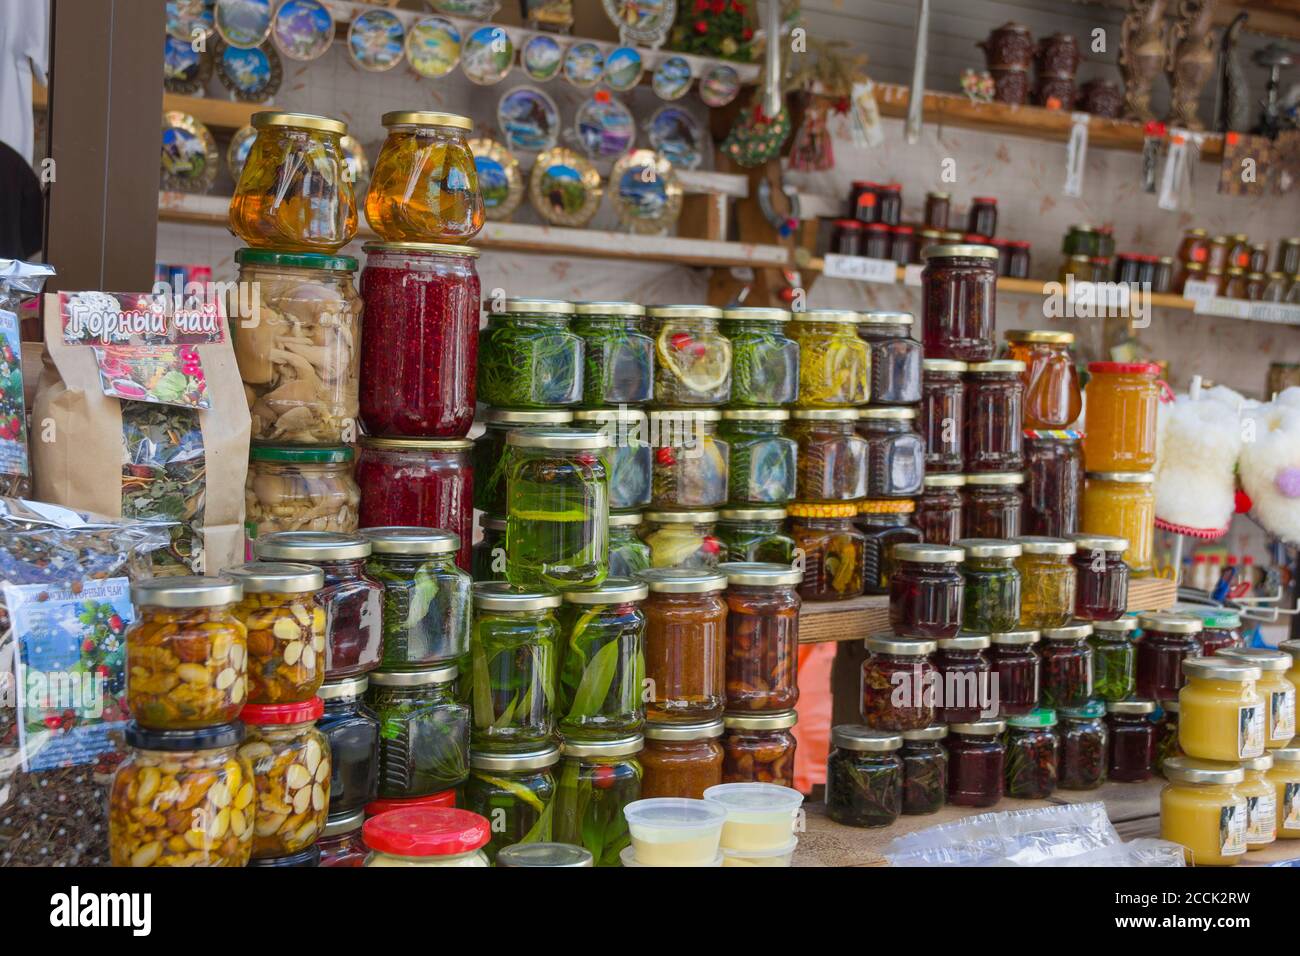 Souvenirladen mit verschiedenen Souvenirs und Gläsern mit hausgemachten Konserven - Marmelade, Gemüse, Honig, Nüsse, Dombay, Russland. Selektiver Fokus Stockfoto